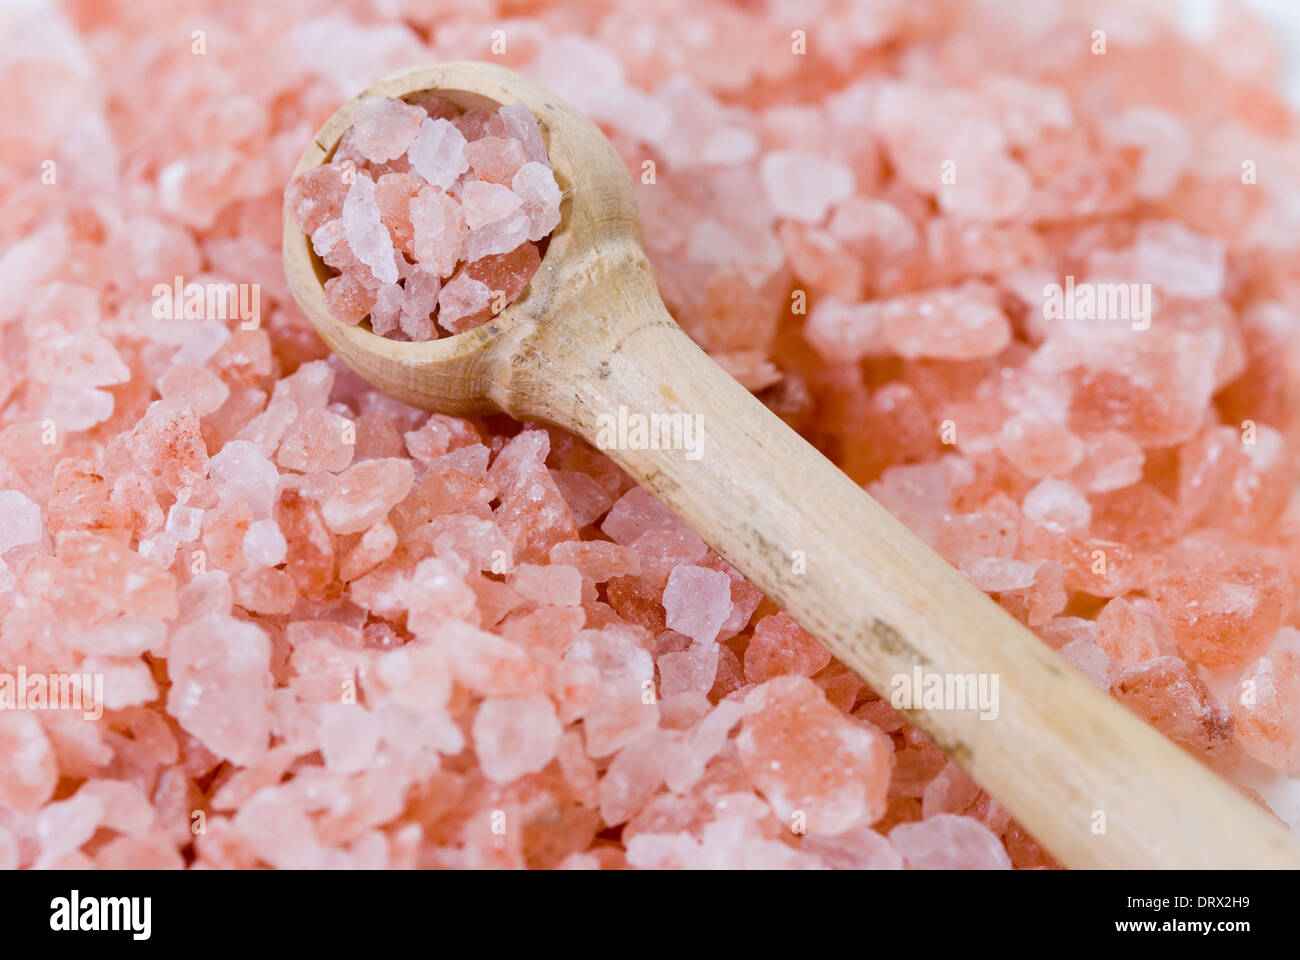 Himalayan pink rock crystal table salt, close up. Stock Photo